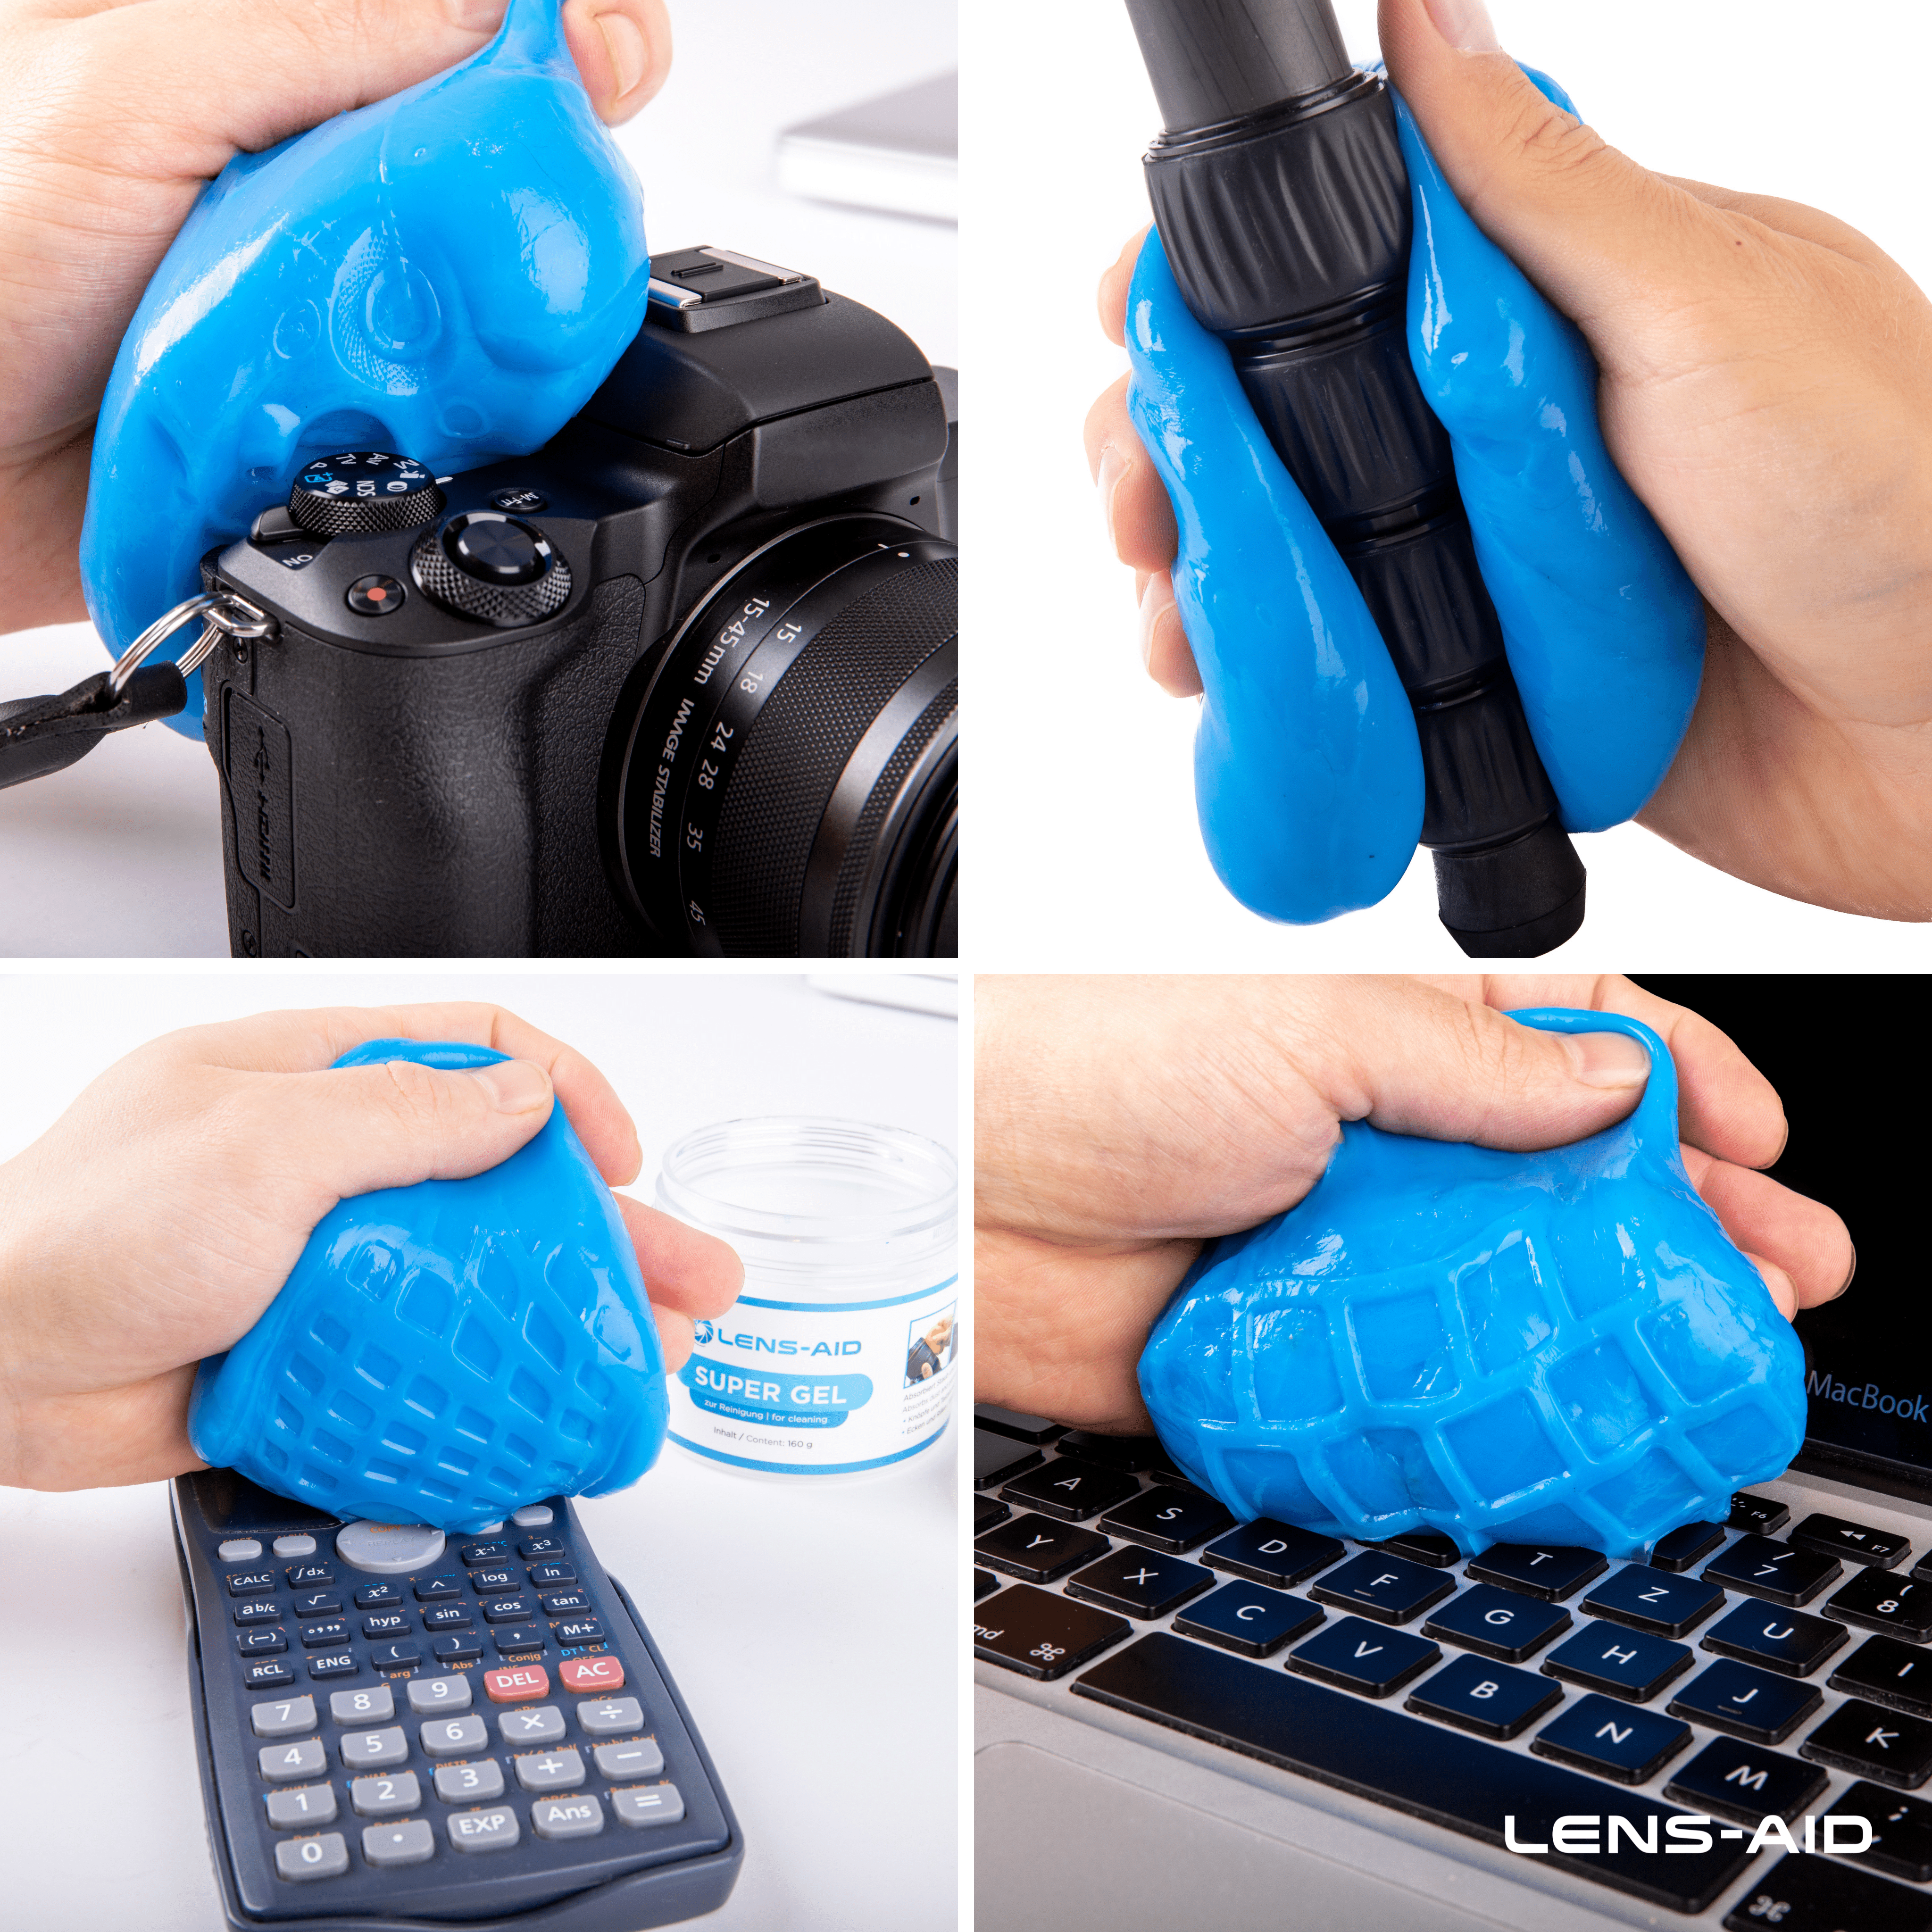 LENS-AID Antibakterielles Reinigungsgel, passend für Tastatur | Kamerareinigung, Laptop Blau, Smartphone | Kamera 